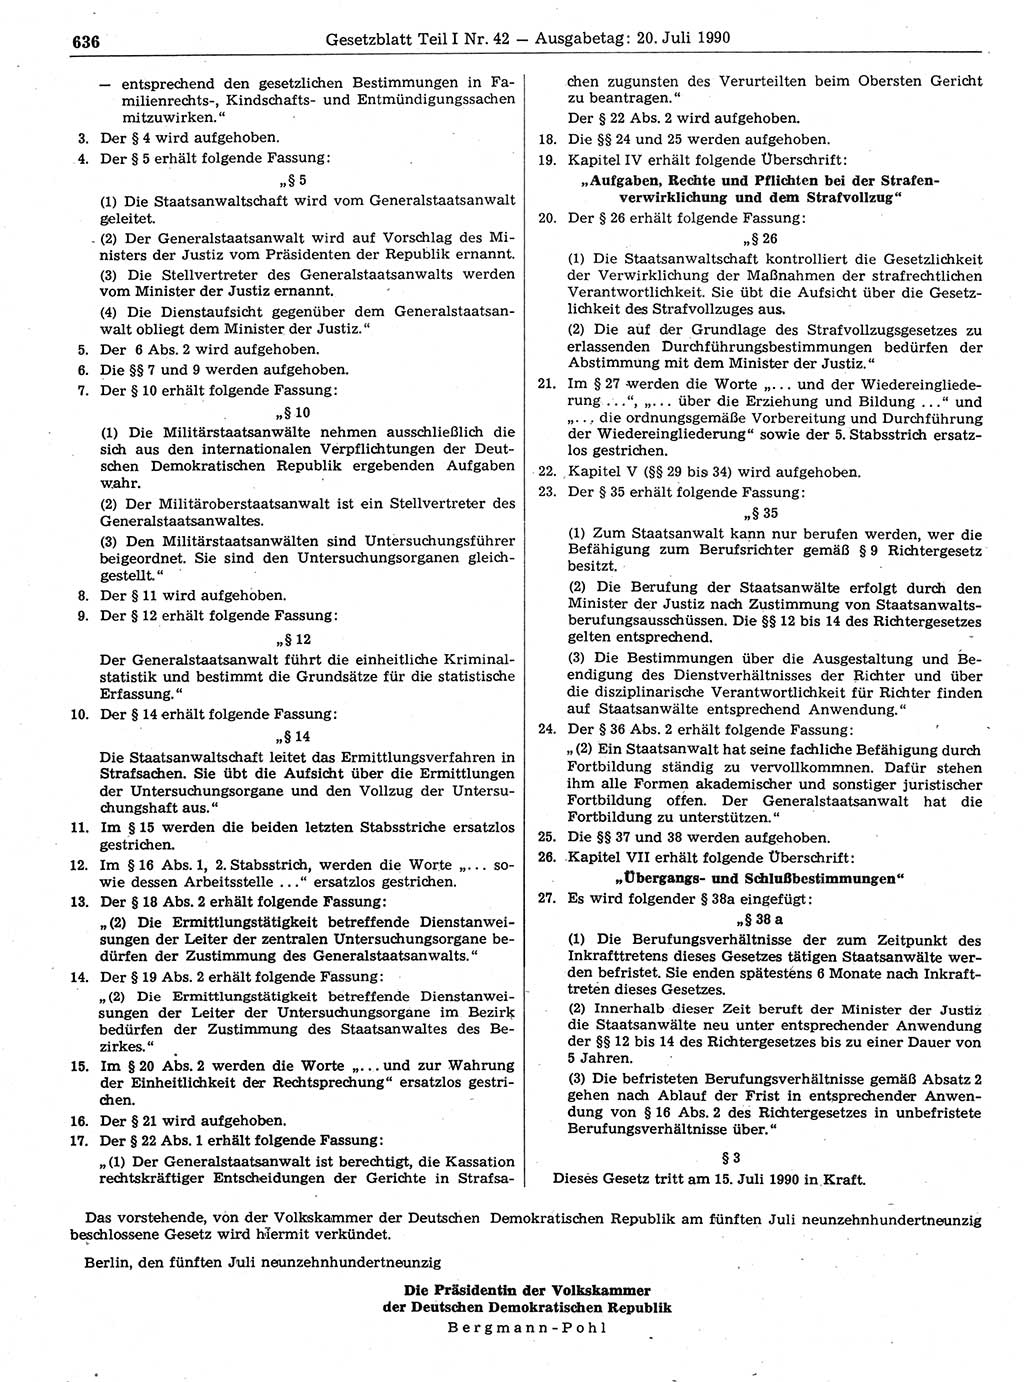 Gesetzblatt (GBl.) der Deutschen Demokratischen Republik (DDR) Teil Ⅰ 1990, Seite 636 (GBl. DDR Ⅰ 1990, S. 636)